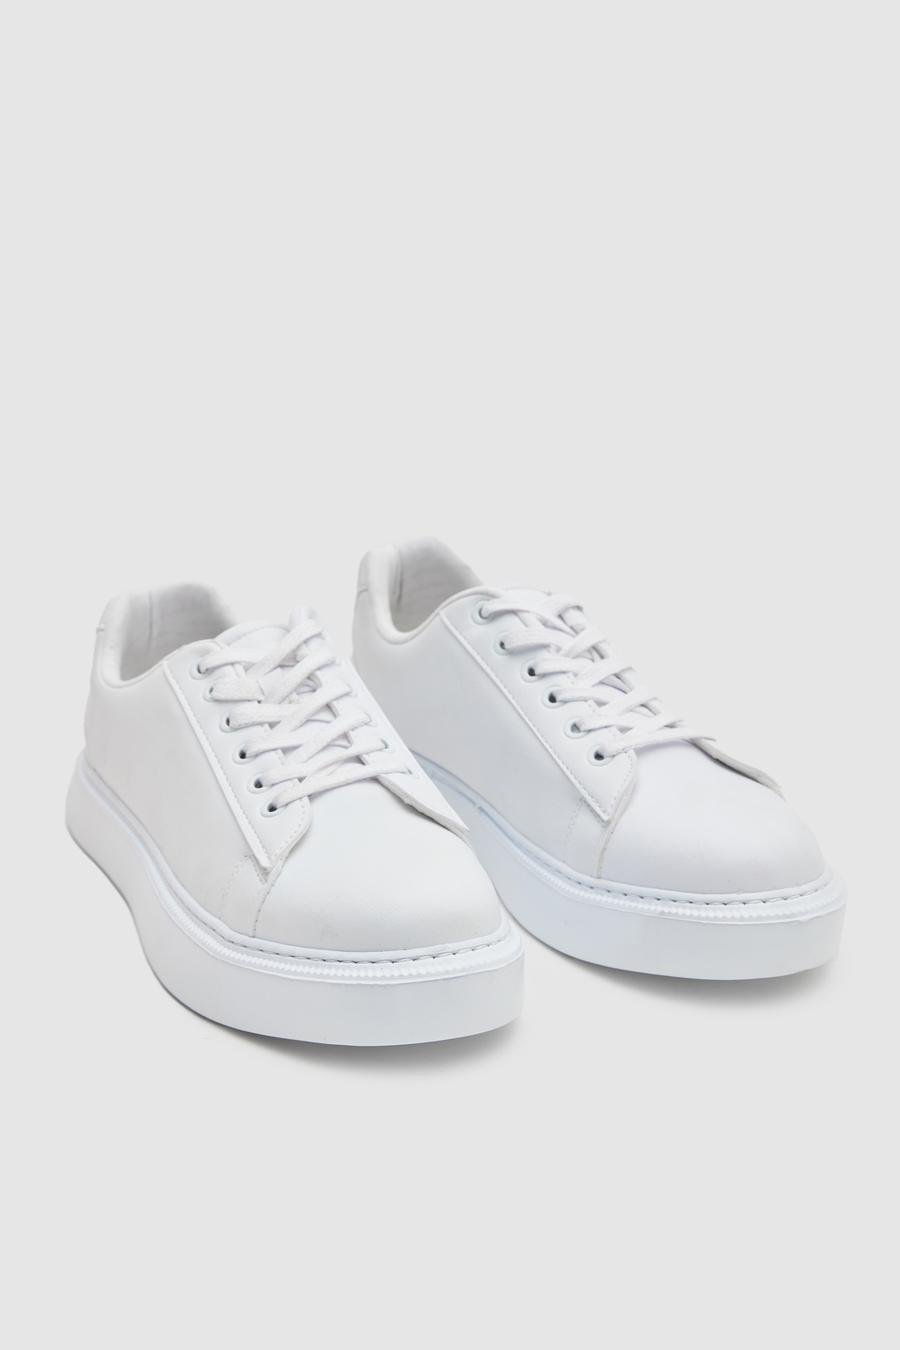 Twn Beyaz Kalın Beyaz Tabanlı Sneaker Ayakkabi - 8683578026355 | D'S Damat